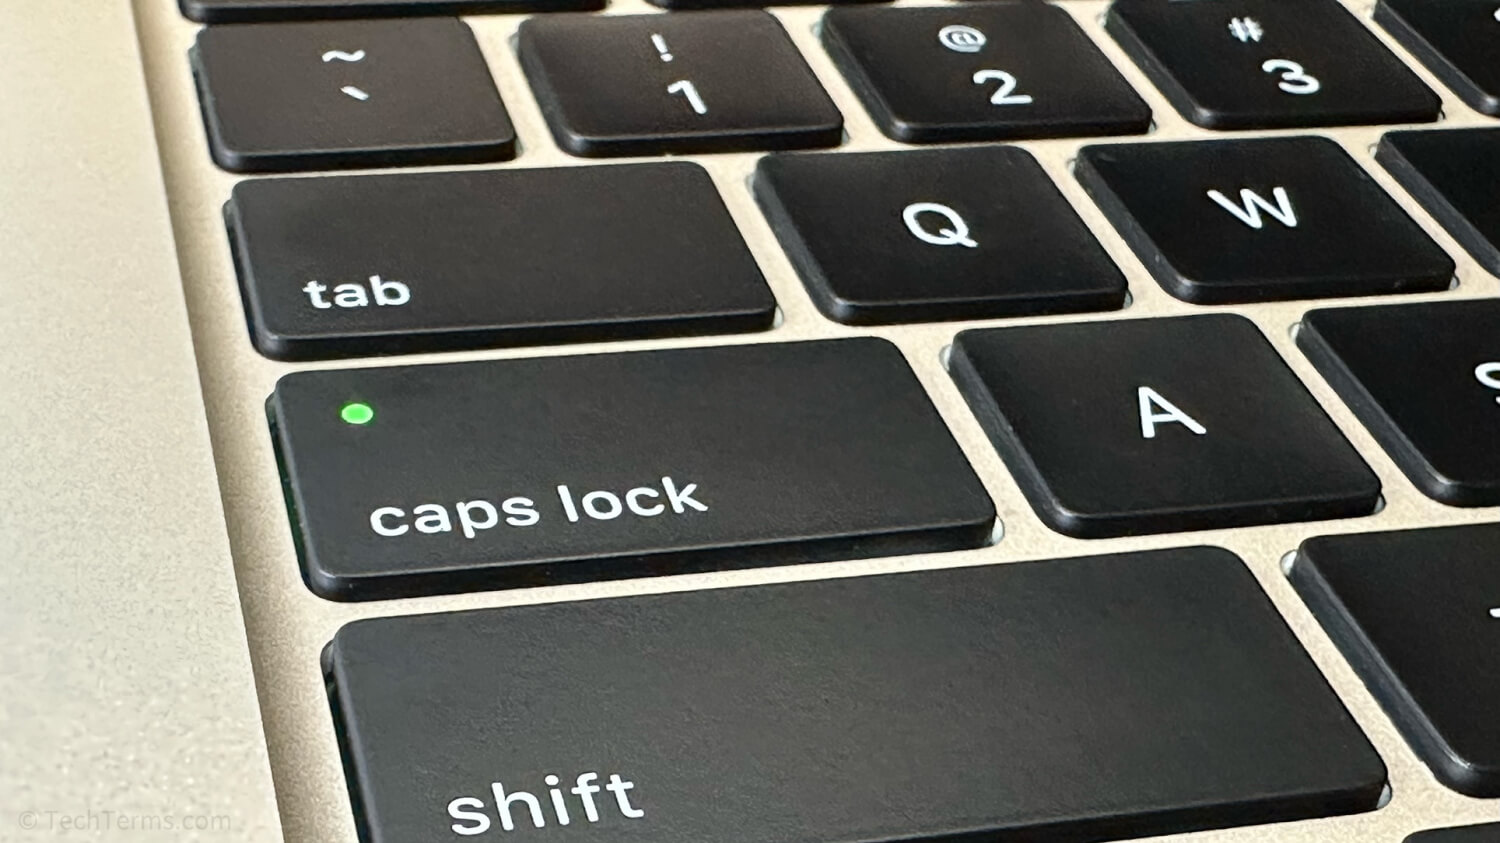 The Caps Lock key on a MacBook Air keyboard